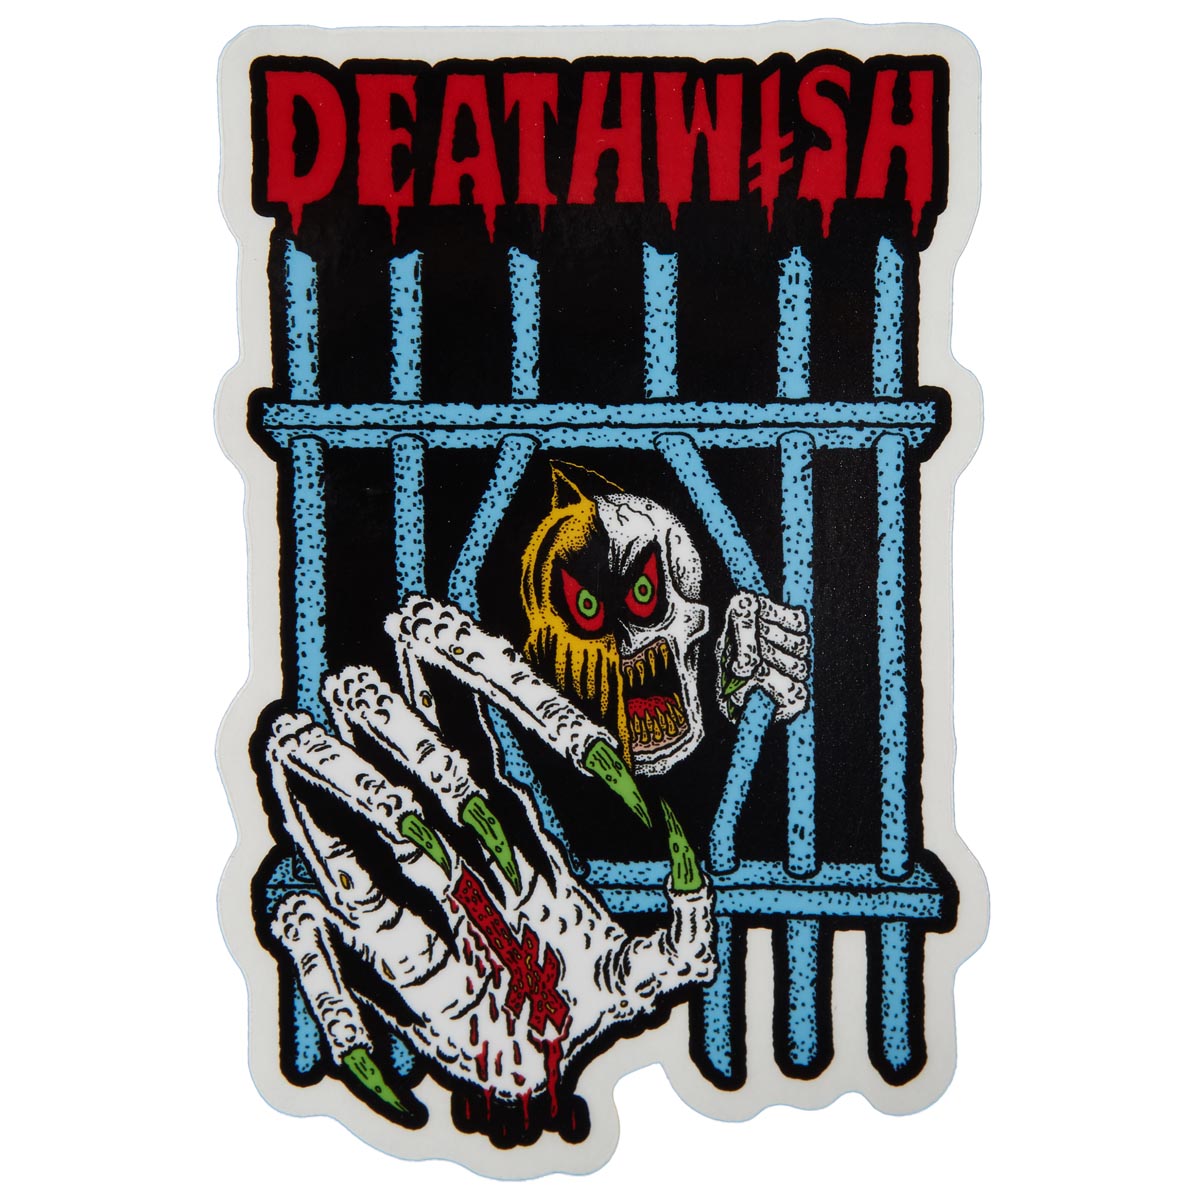 Deathwish Golden Sticker - Foy Deathwitch Trials image 1